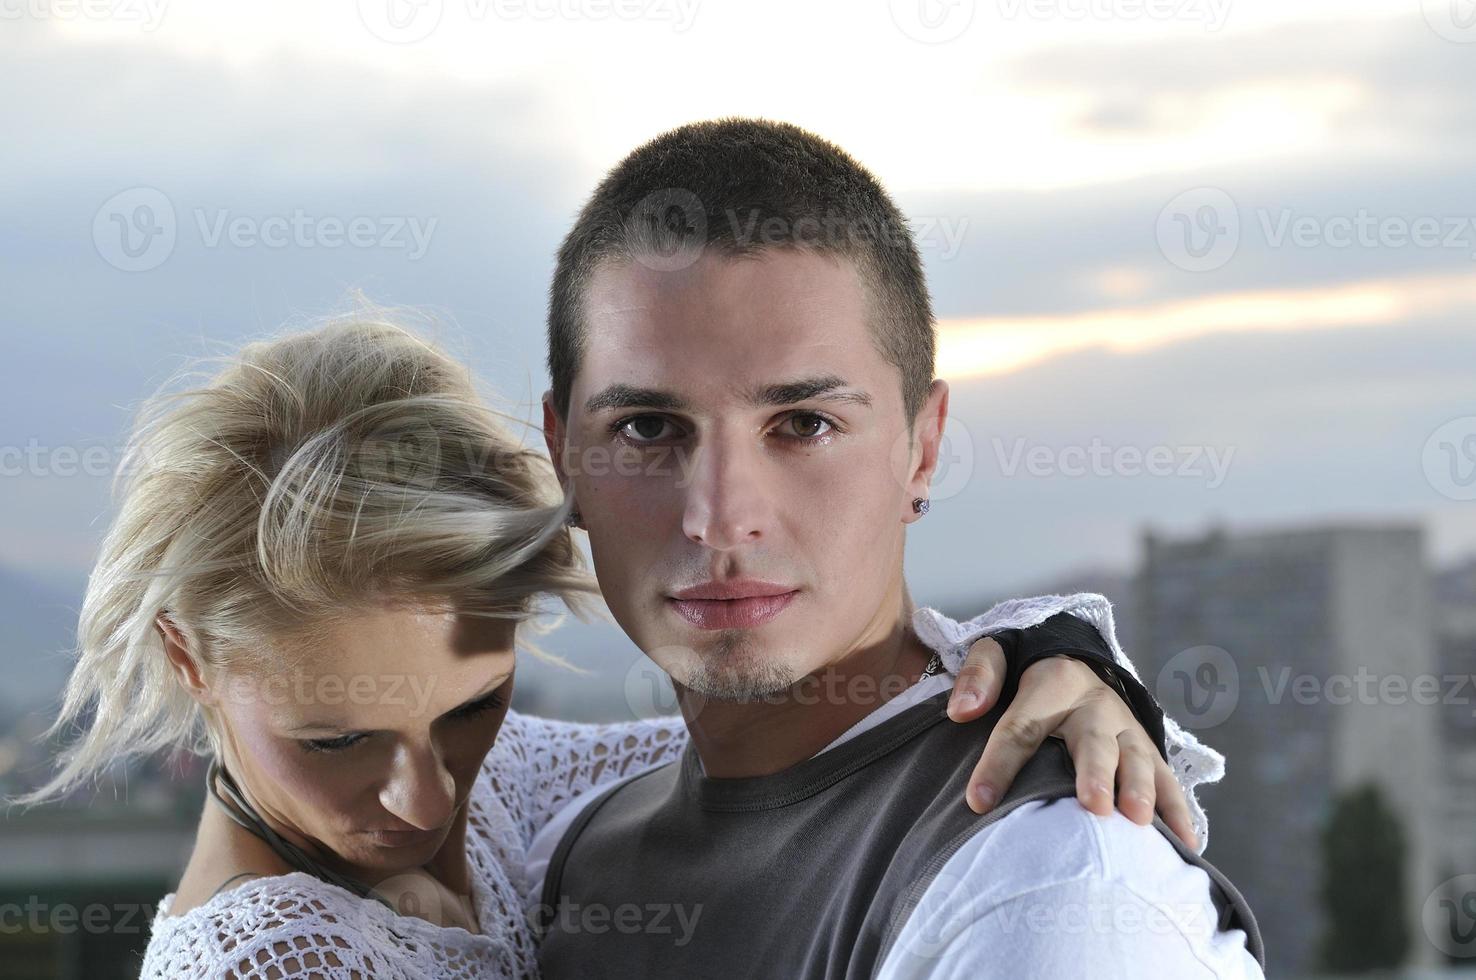 romantique urbain jeune couple en plein air photo